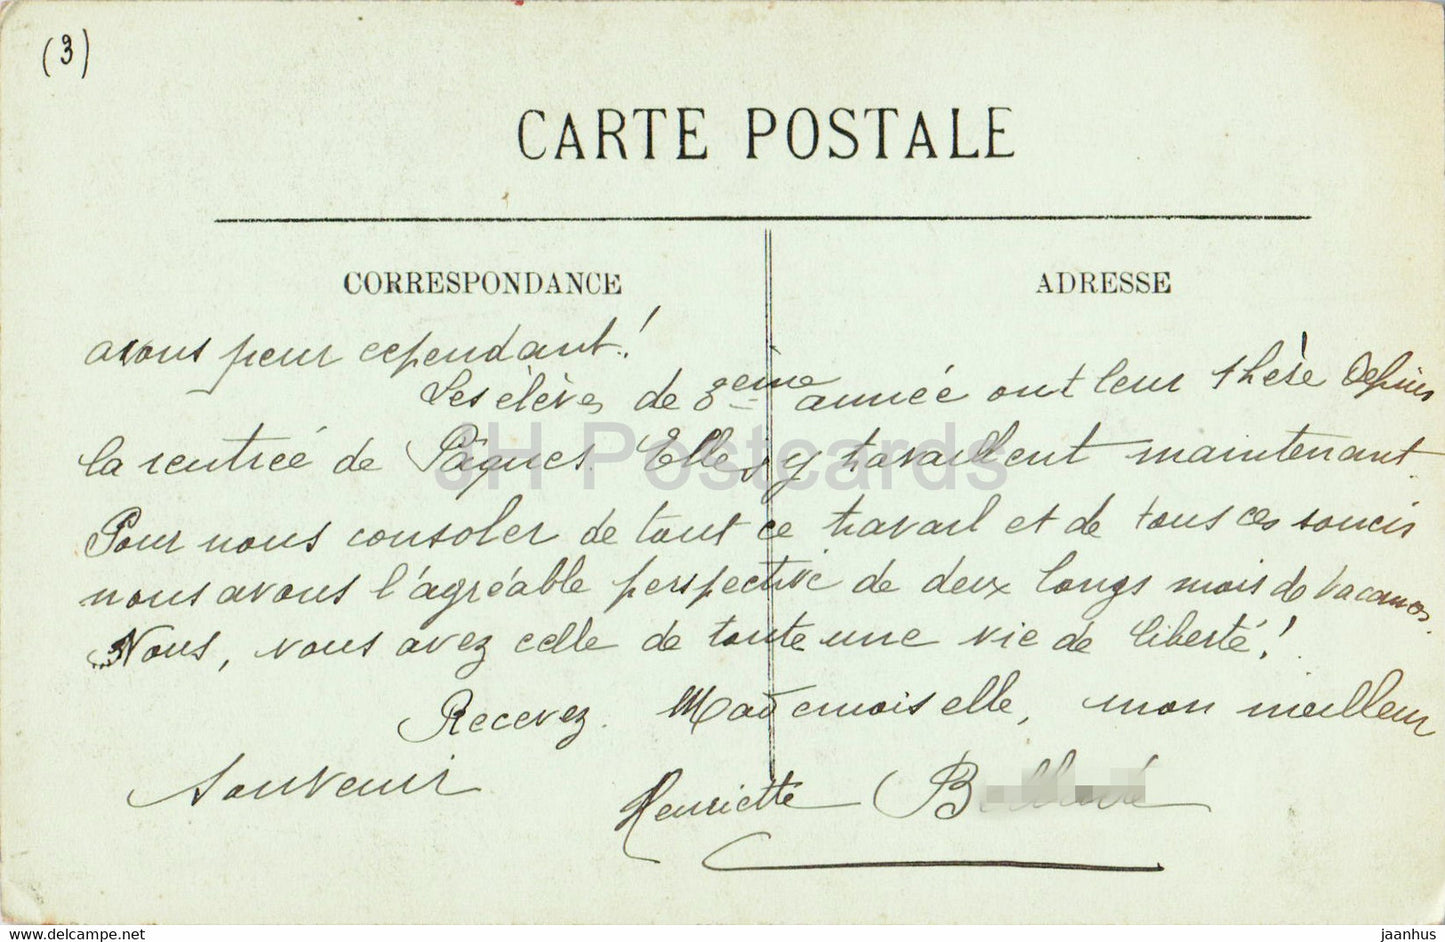 Route et Chemin de Pierrefitte a Cauterets – Le Limacon – 138 – alte Postkarte – Frankreich – gebraucht